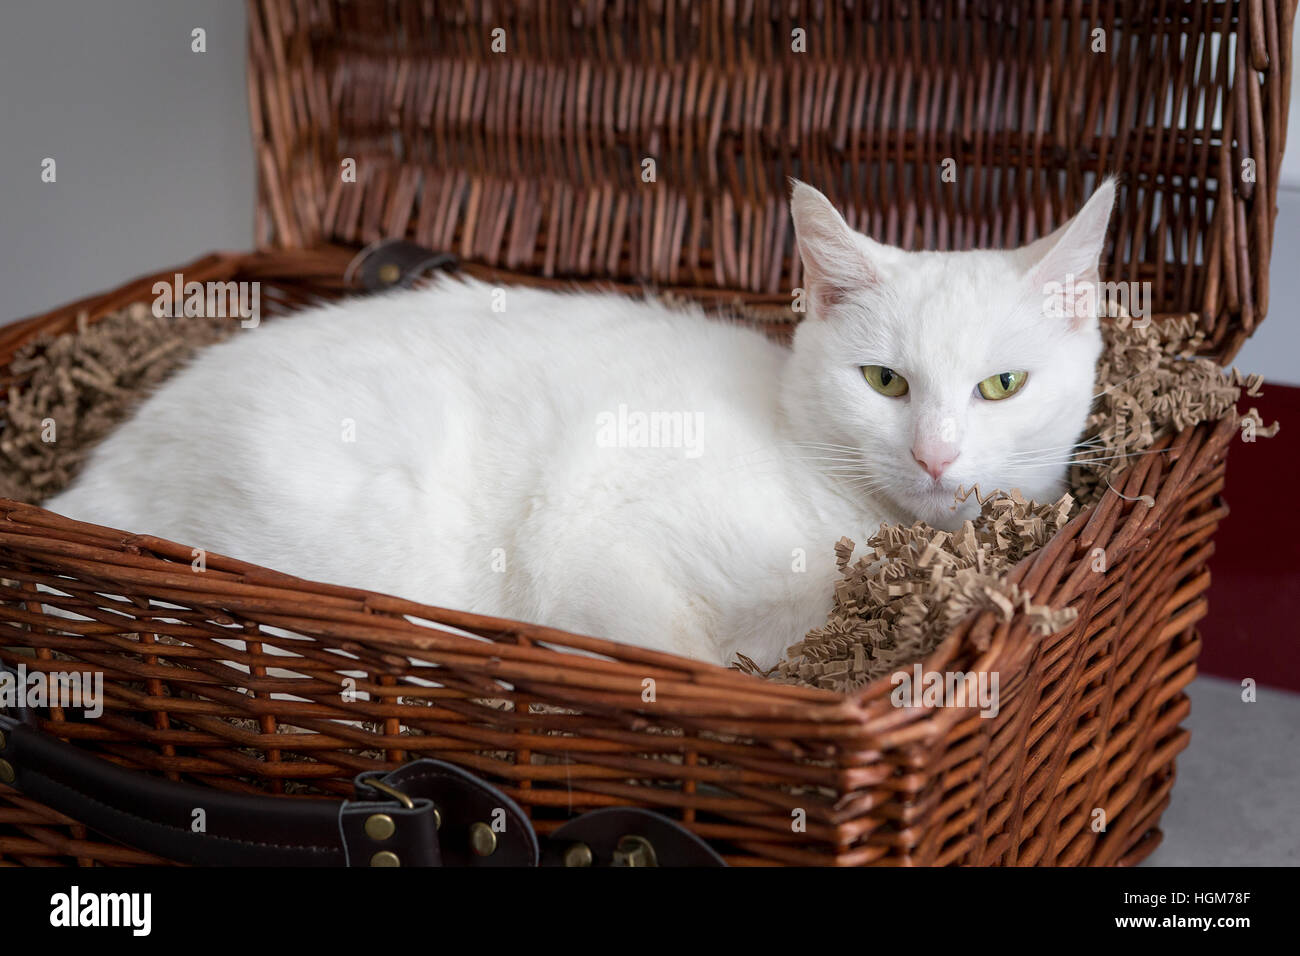 Gatto Bianco di riposo in vimini ostacolano alimentare sul piano di una cucina Foto Stock